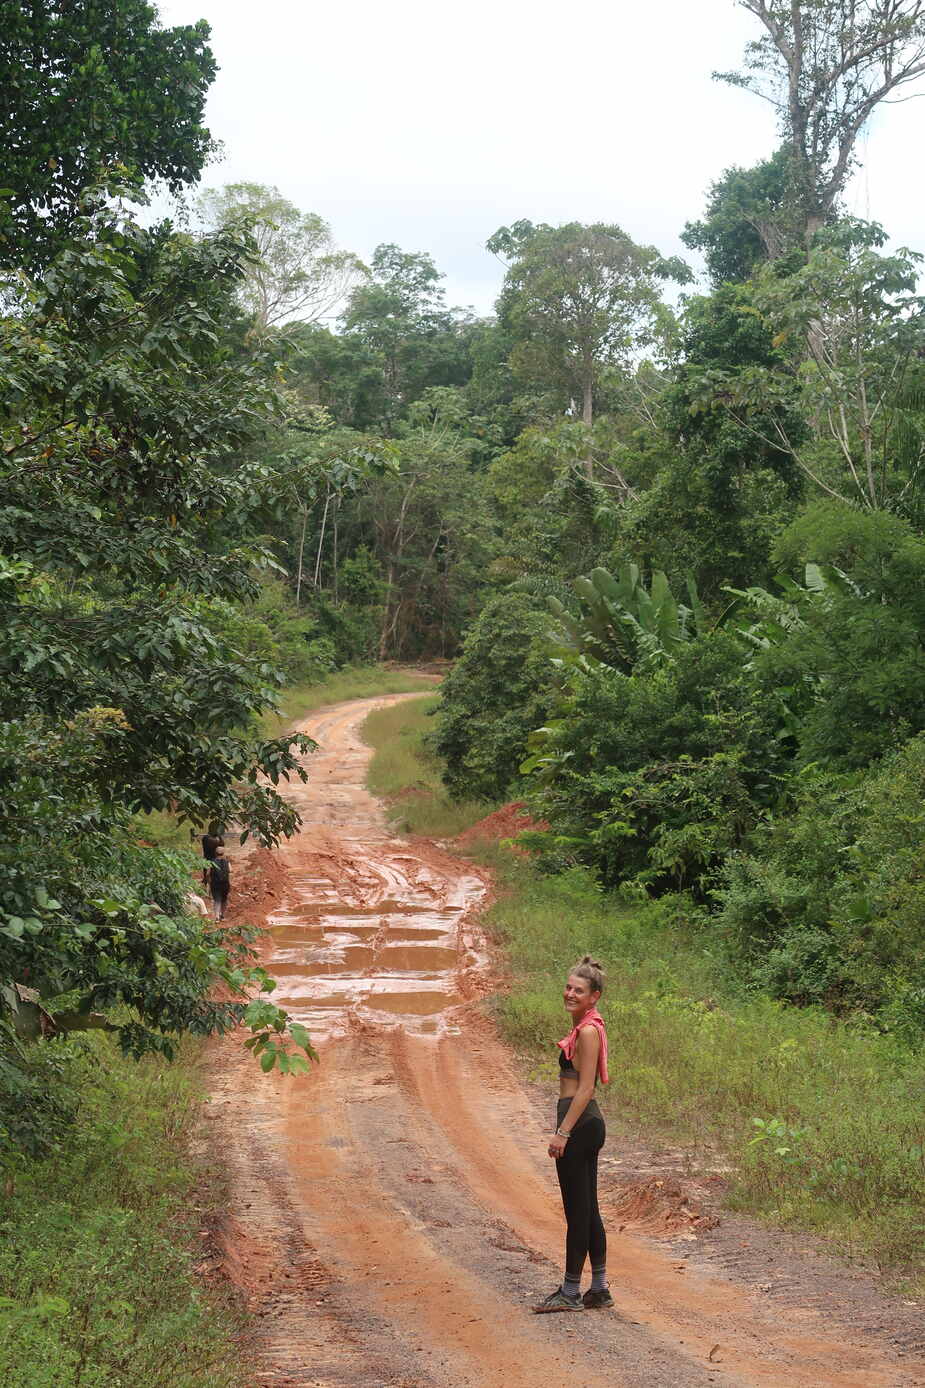 De jungle van Suriname